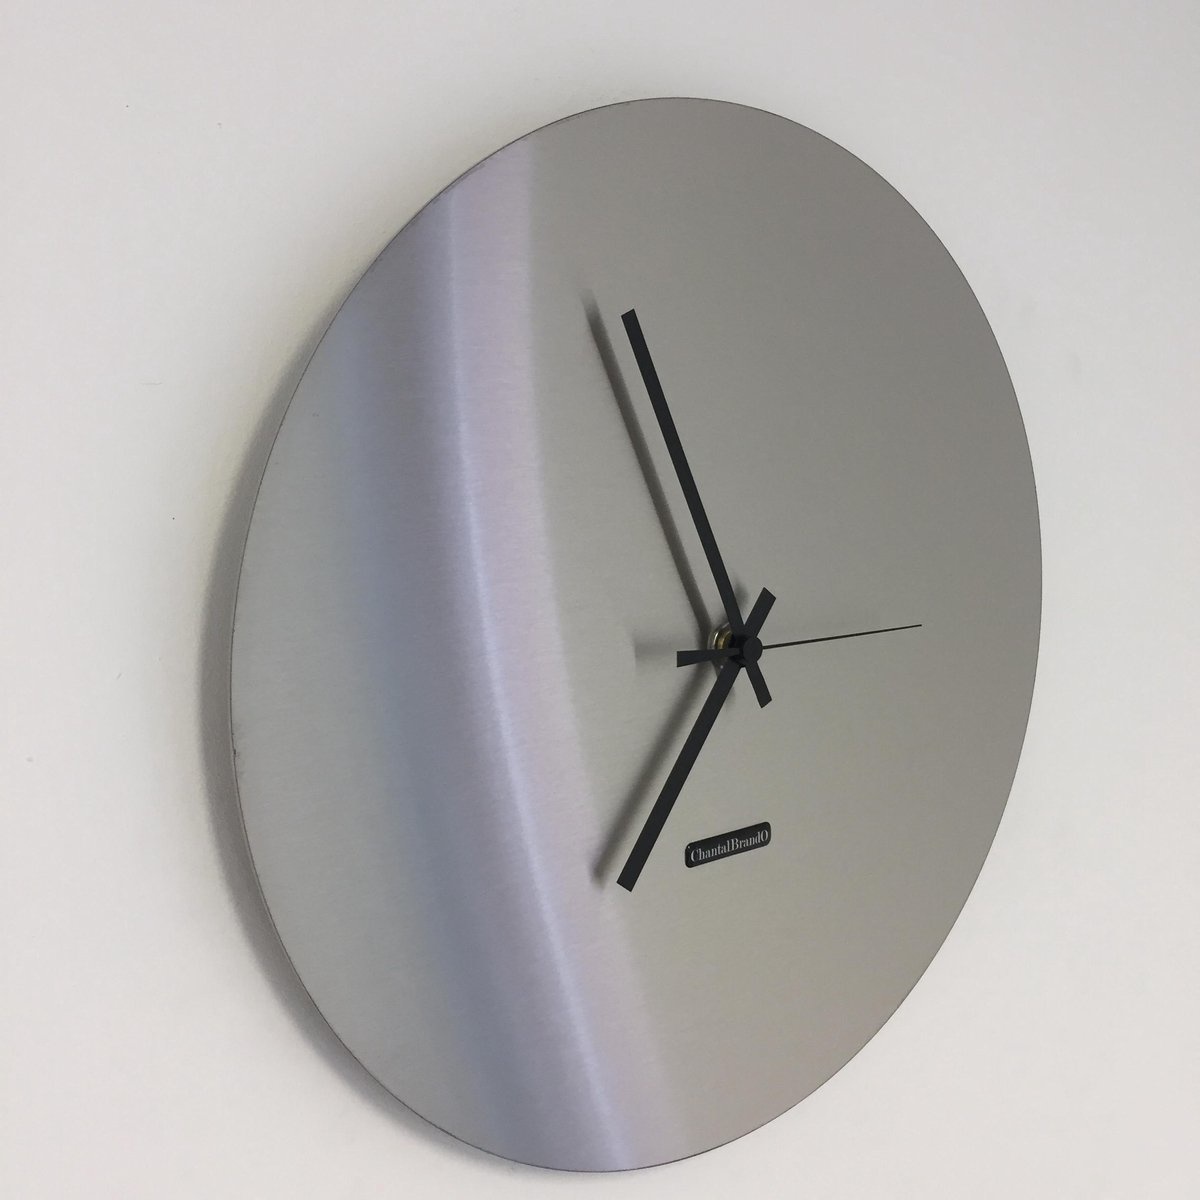 ChantalBrandO Design - Wall clock Firenze XL Modern Design